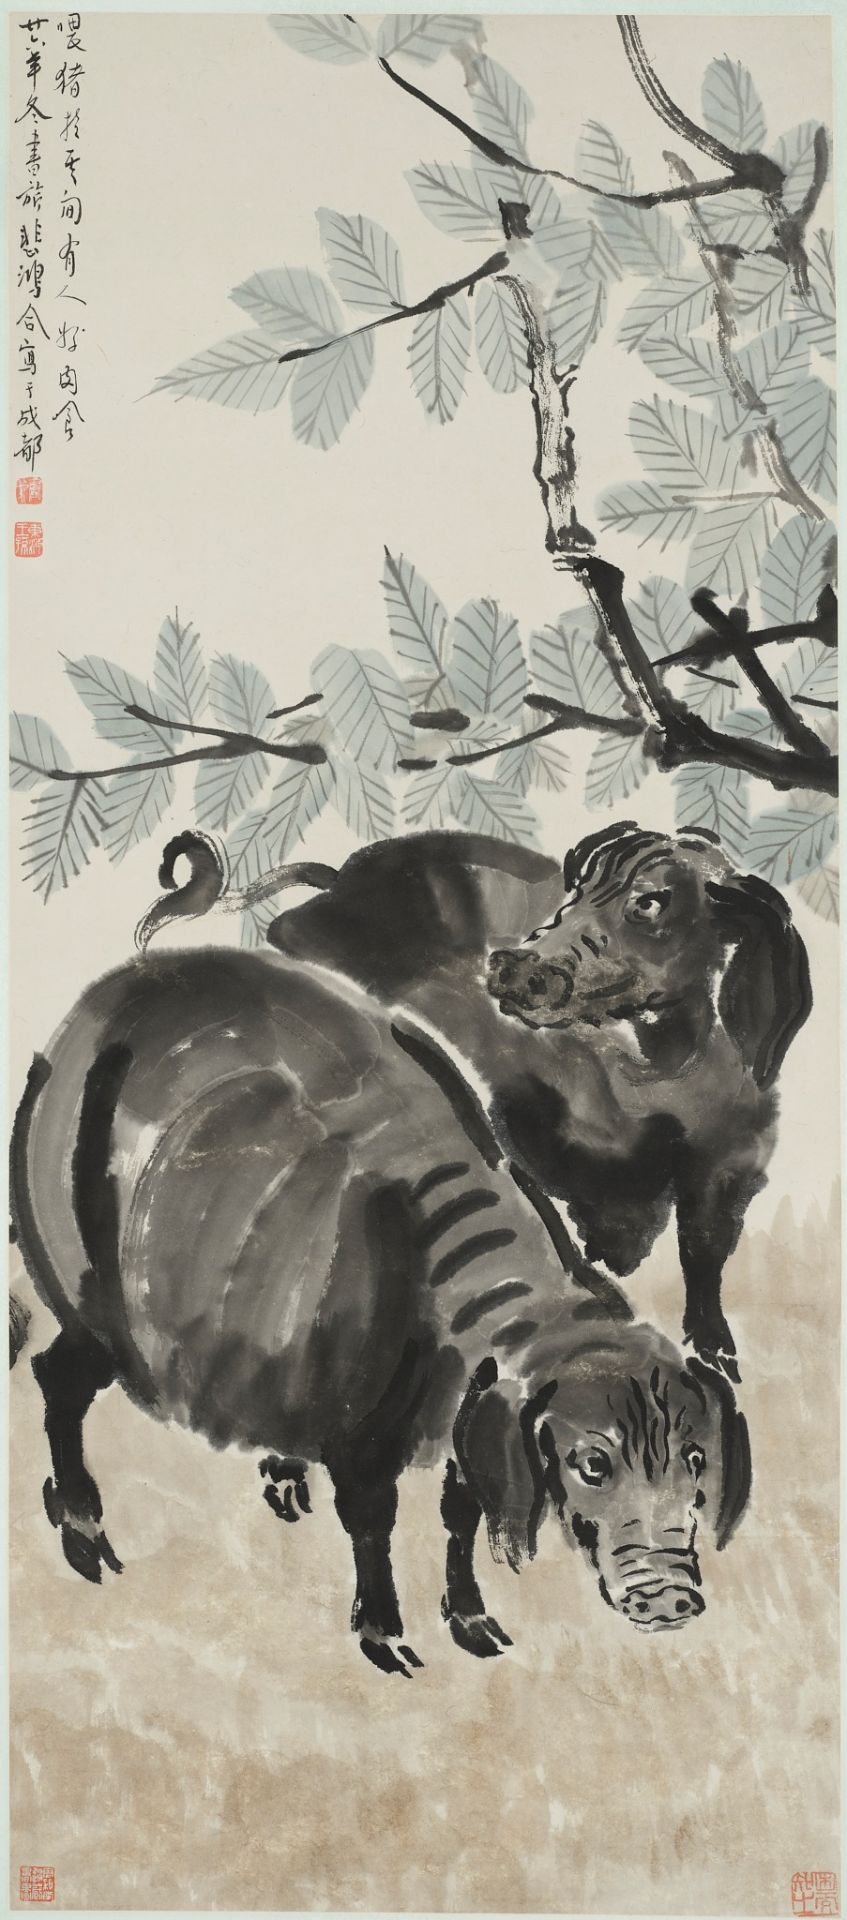 XU BEIHONG (1895-1953) AND ZHANG SHUQI (1899-1956): 'TWO PIGS', DATED 1937